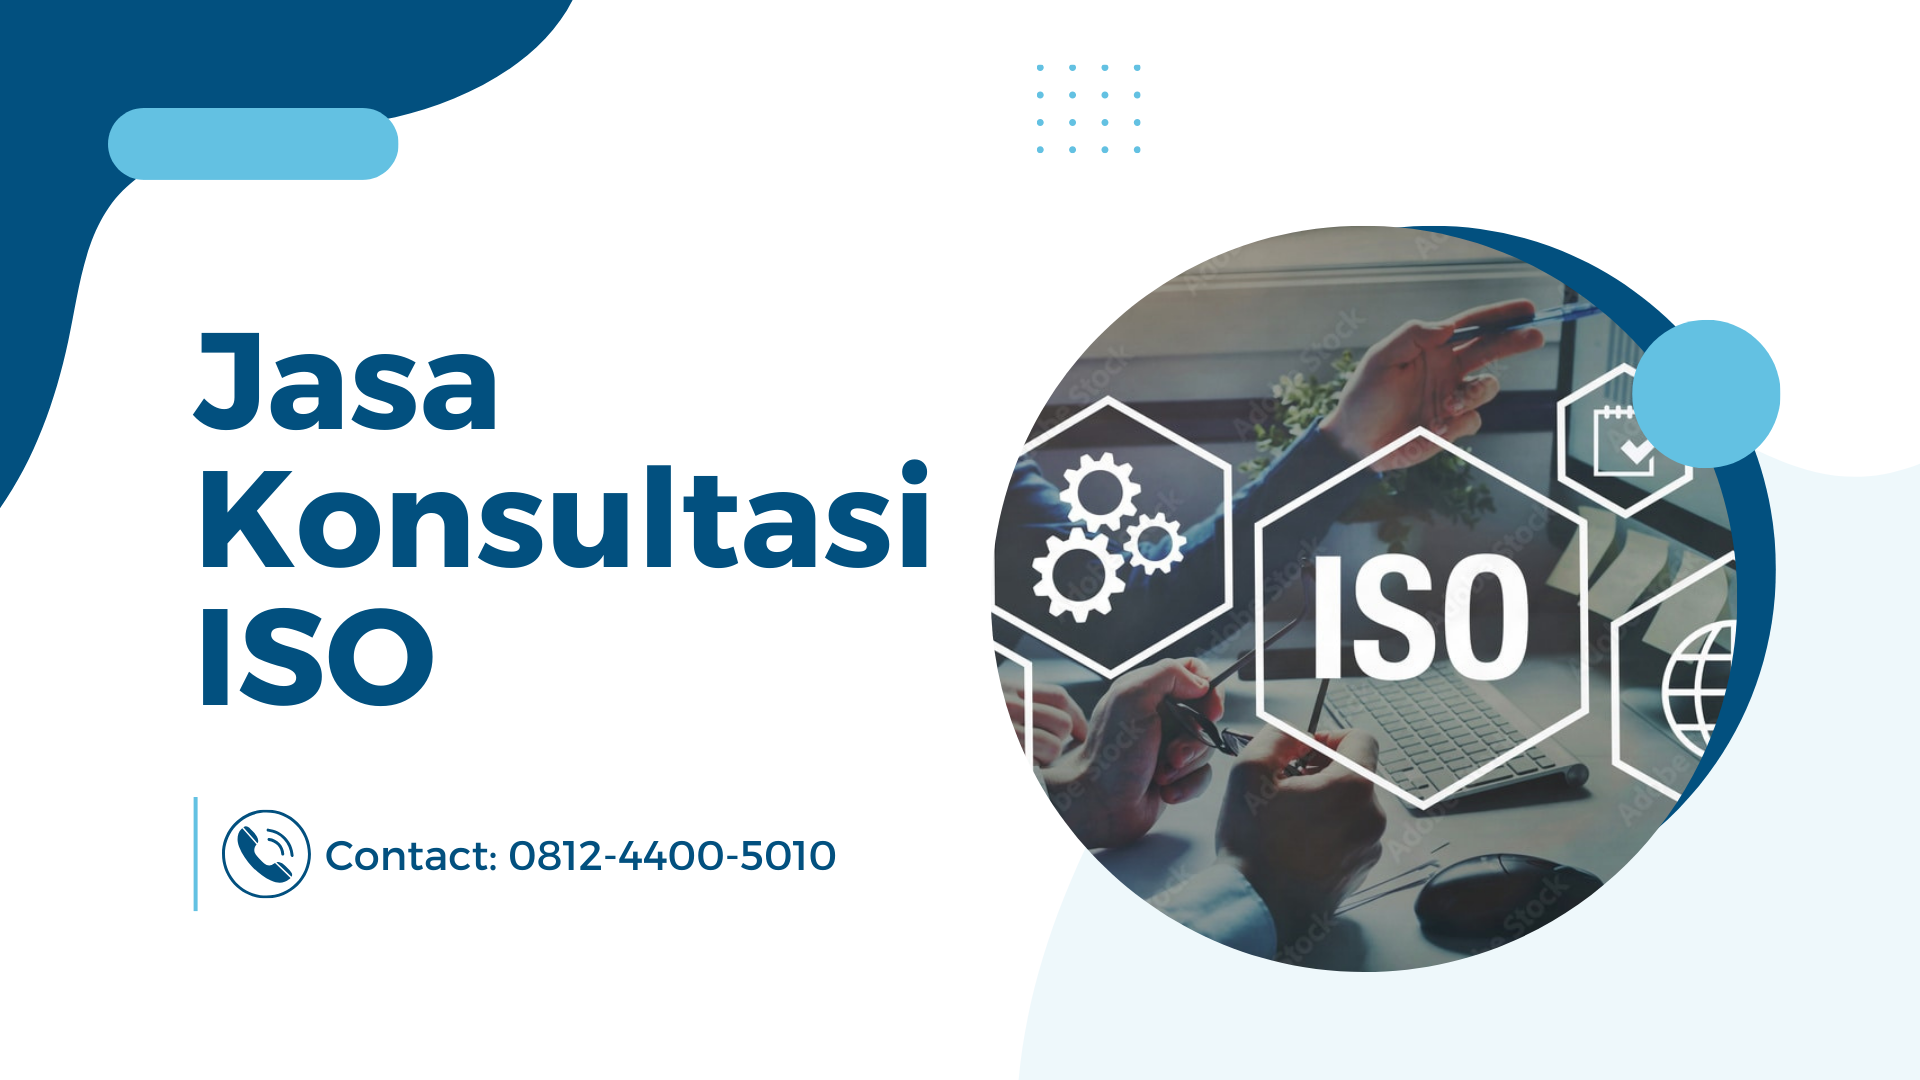 Jasa Konsultasi ISO